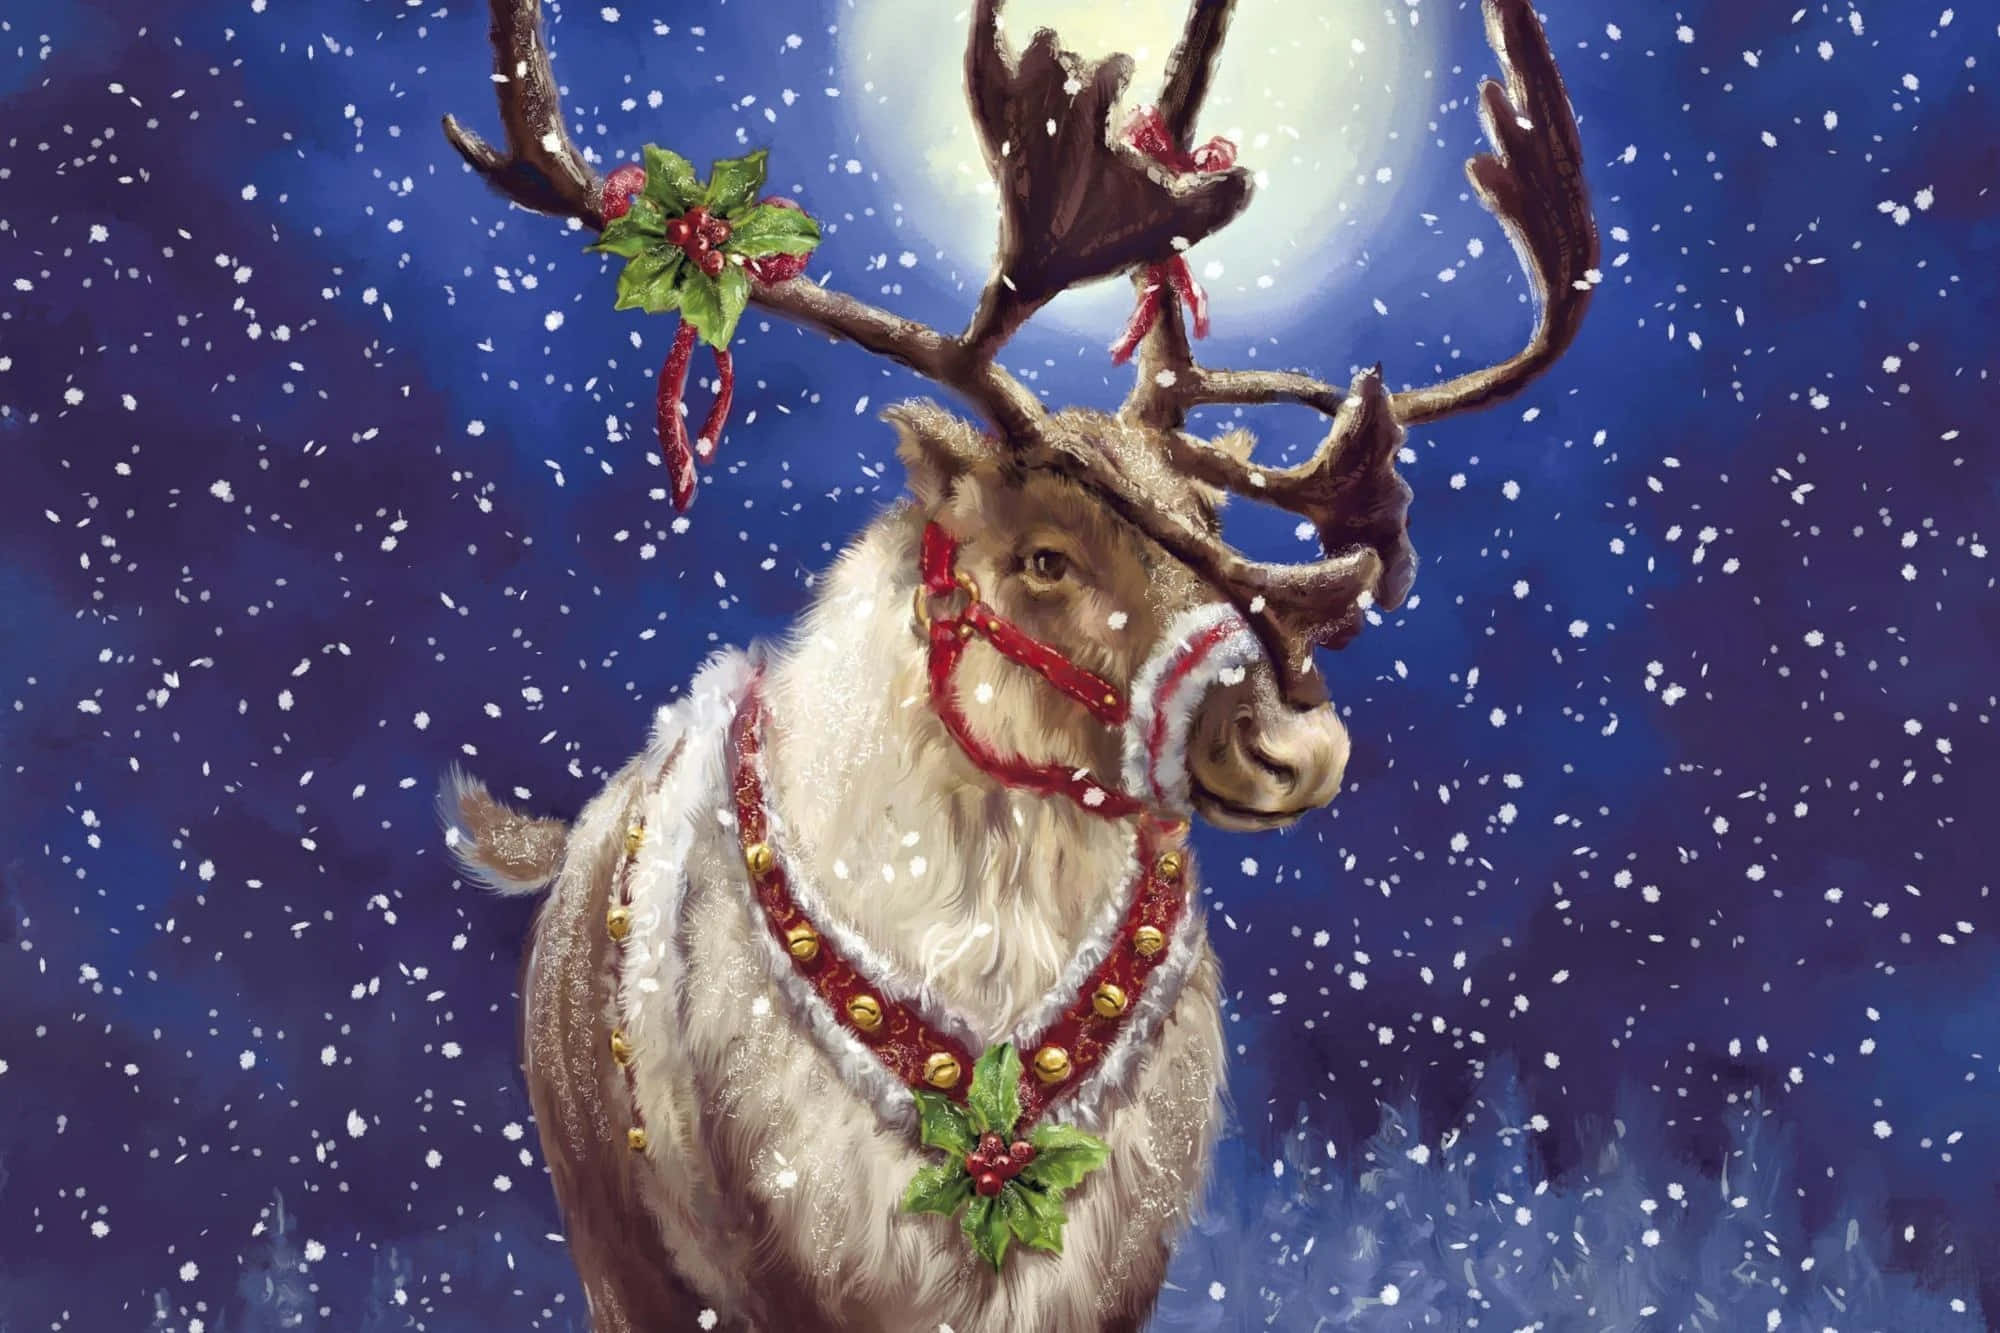 Santa's Reindeer resting in the snow